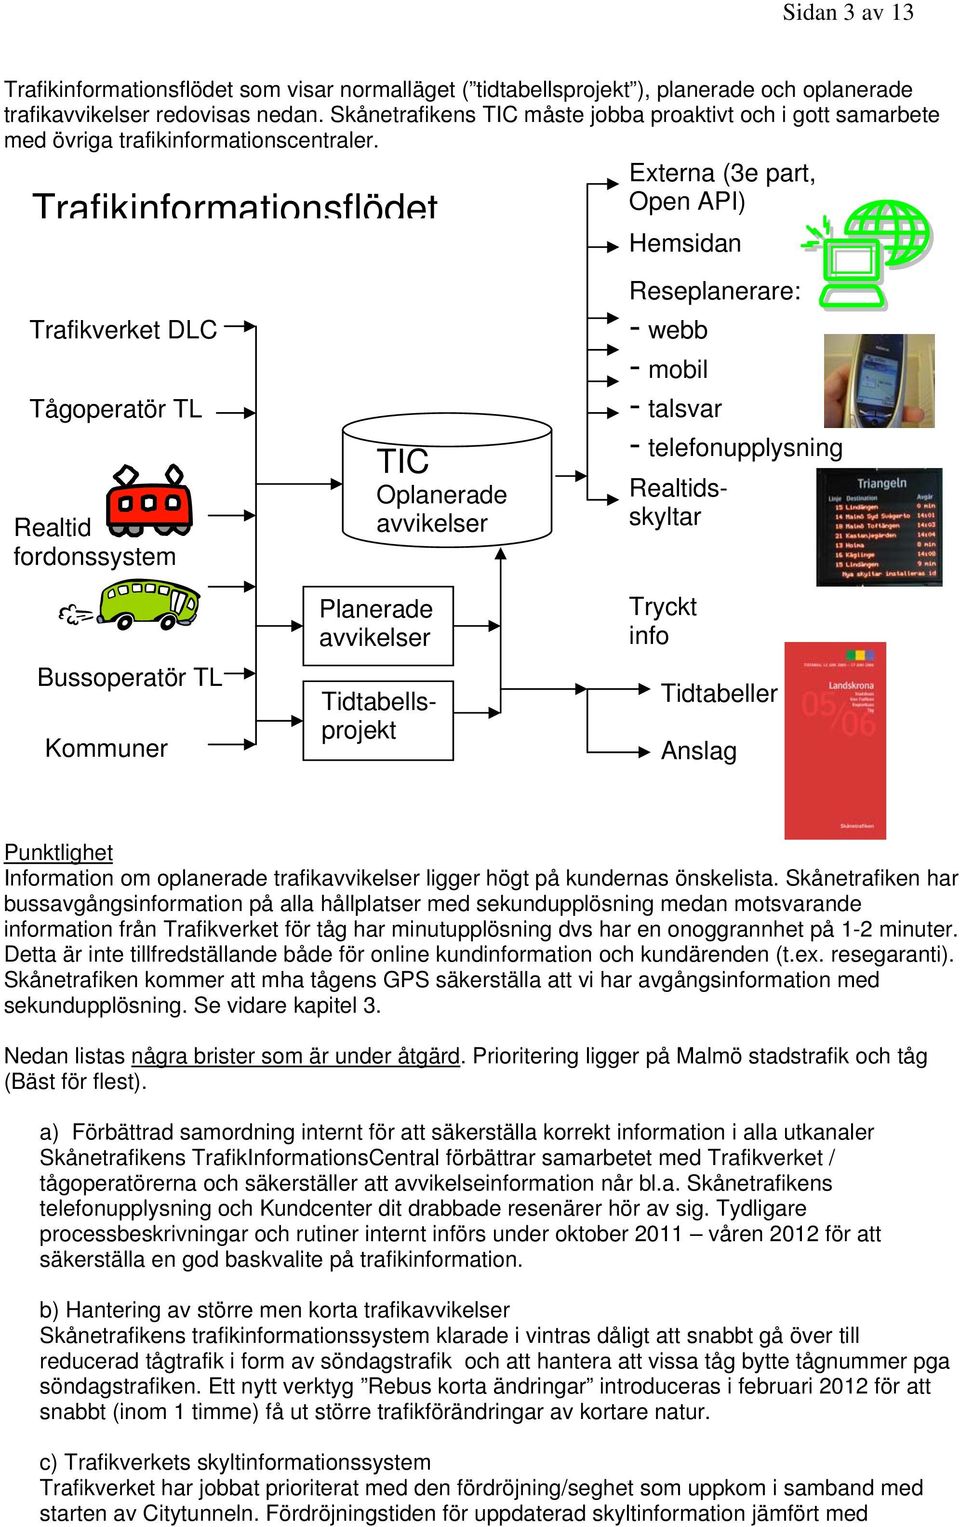 Externa (3e part, Open API) Trafikinformationsflödet Trafikverket DLC Tågoperatör TL Realtid fordonssystem TIC Oplanerade avvikelser Hemsidan Reseplanerare: - webb - mobil - talsvar -